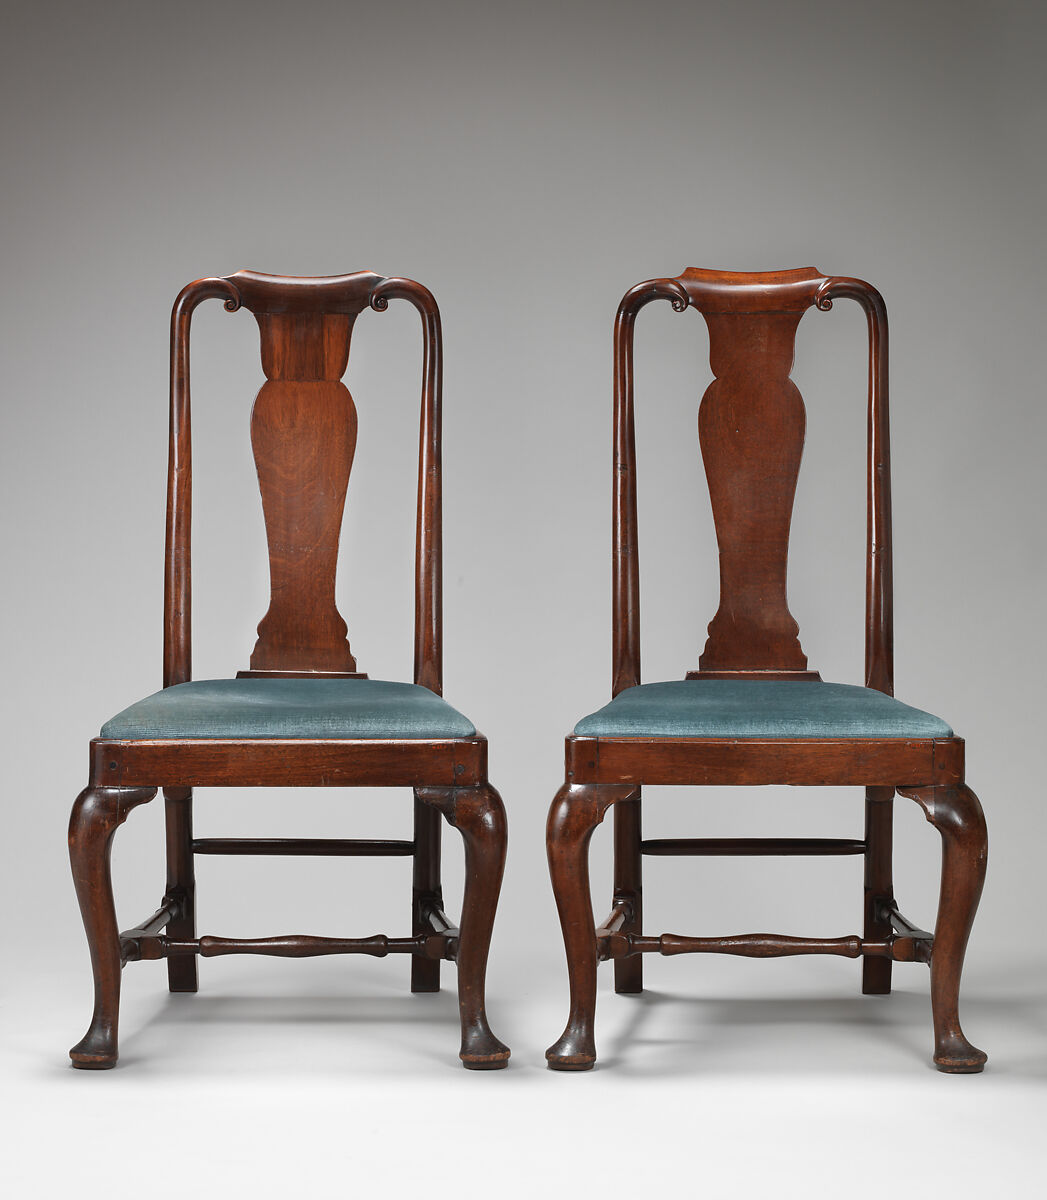 Set of four chairs, Mahogany, British 